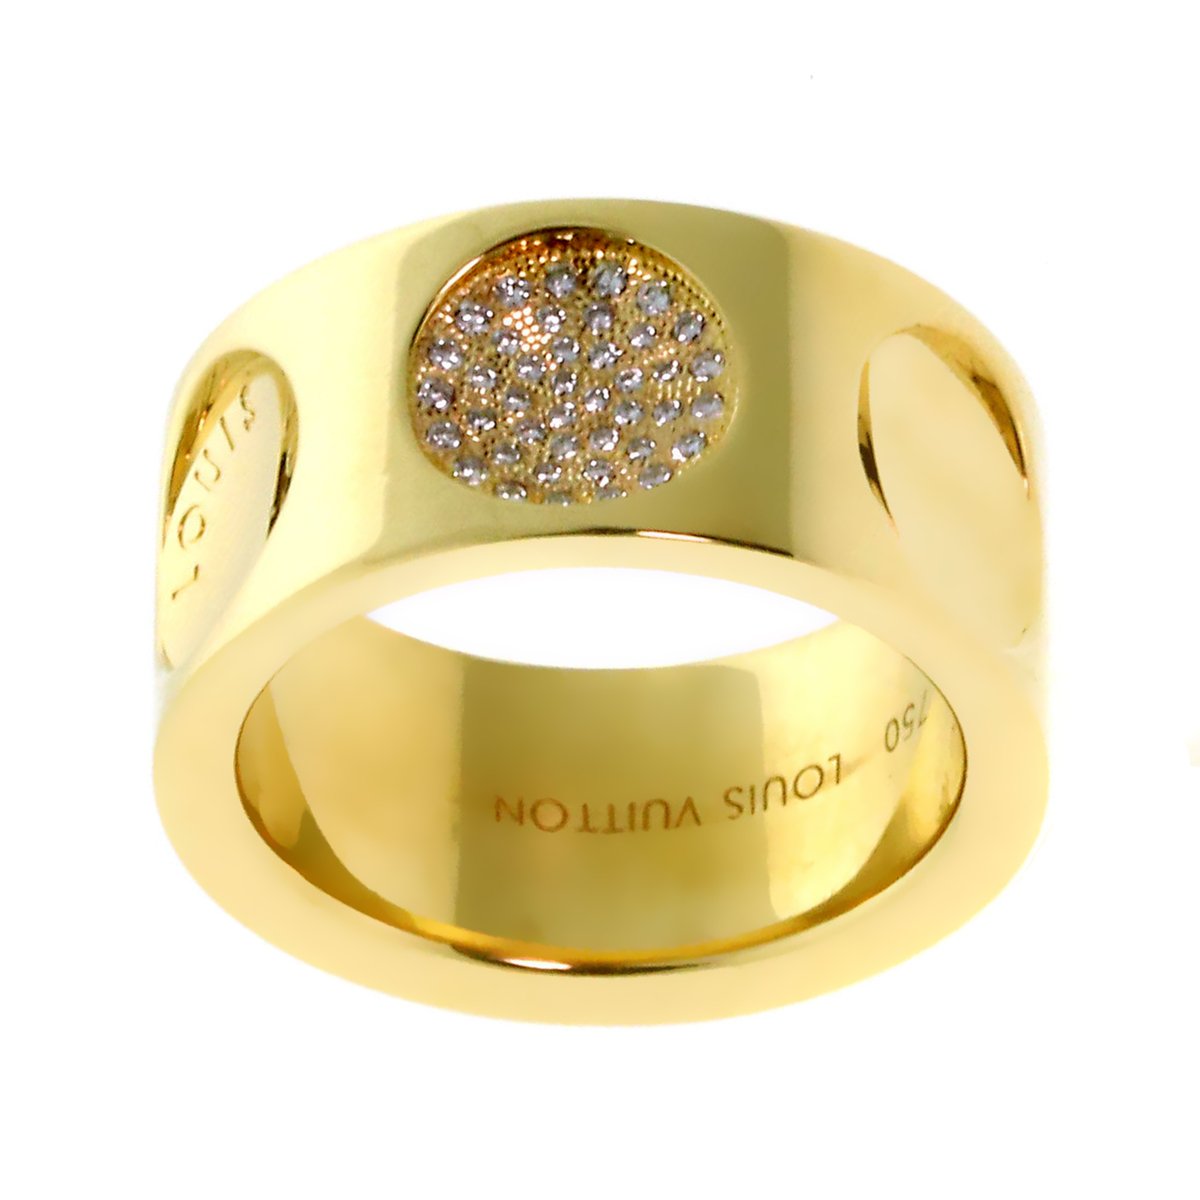 Authentic LOUIS VUITTON Petite Berg Empreinte Ring #260-006-004-9810